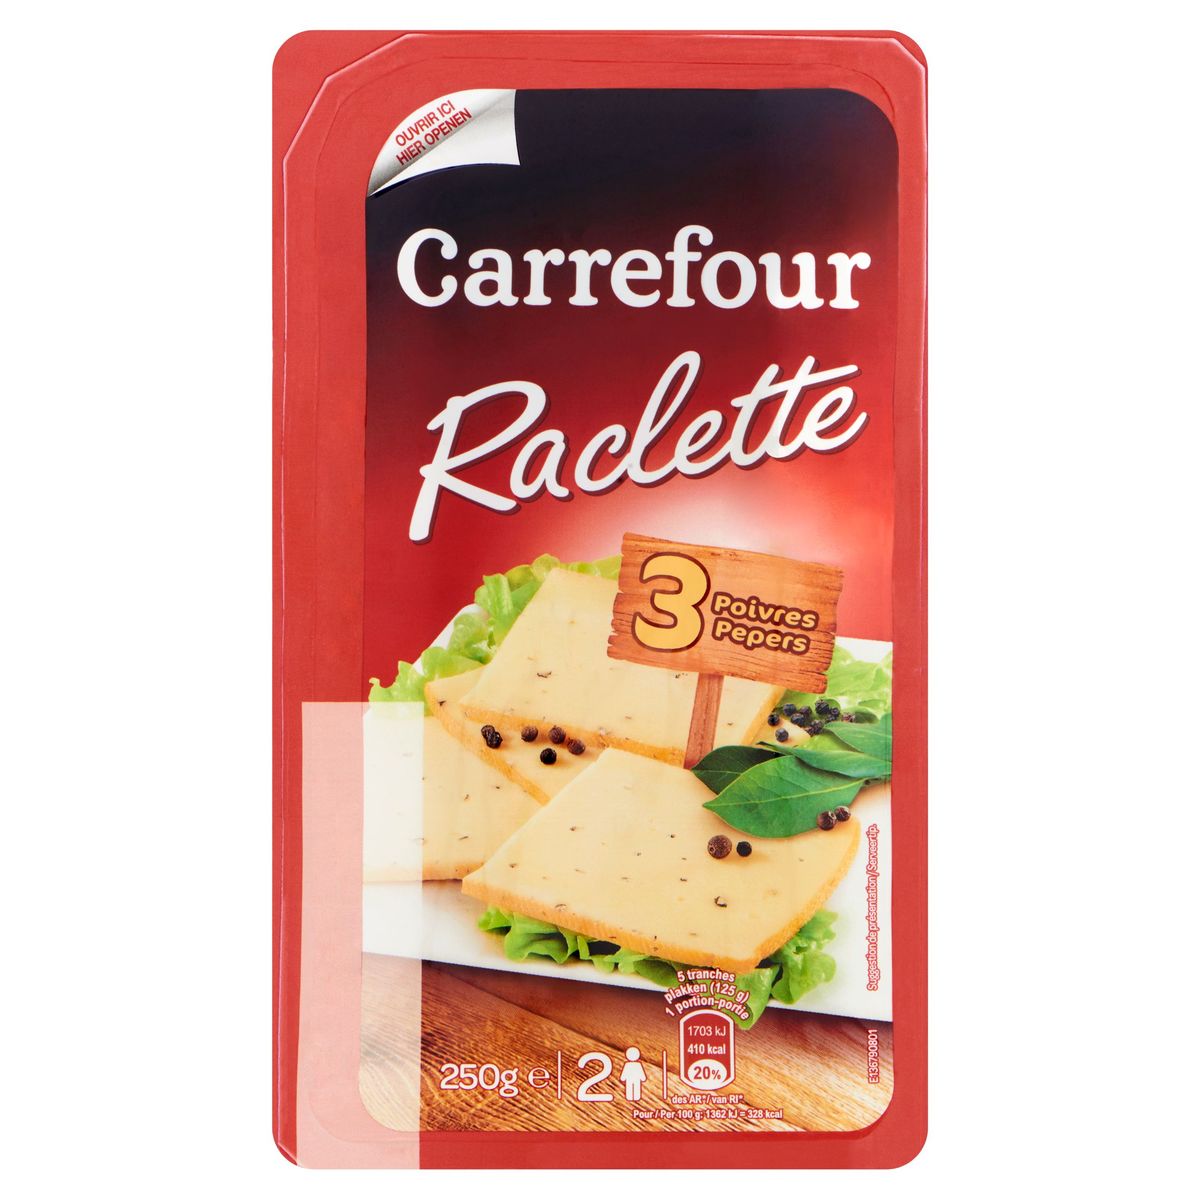 Carrefour Raclette 3 Poivres 250 g